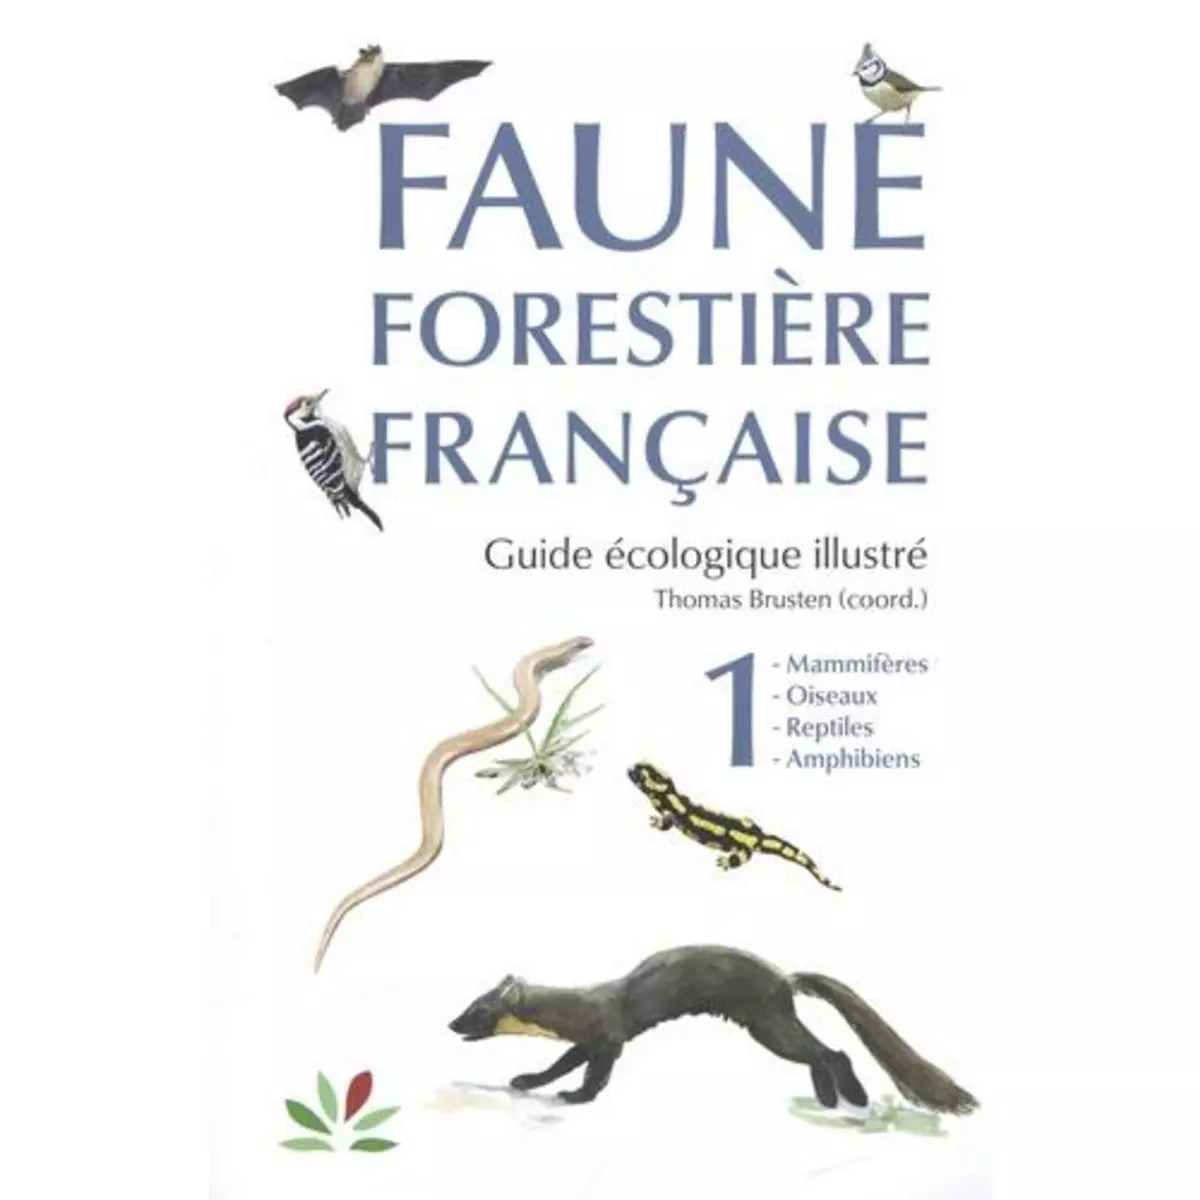  FAUNE FORESTIERE FRANCAISE, GUIDE ECOLOGIQUE ILLUSTRE. TOME 1, MAMMIFERES, OISEAUX, REPTILES, AMPHIBIENS, Brusten Thomas